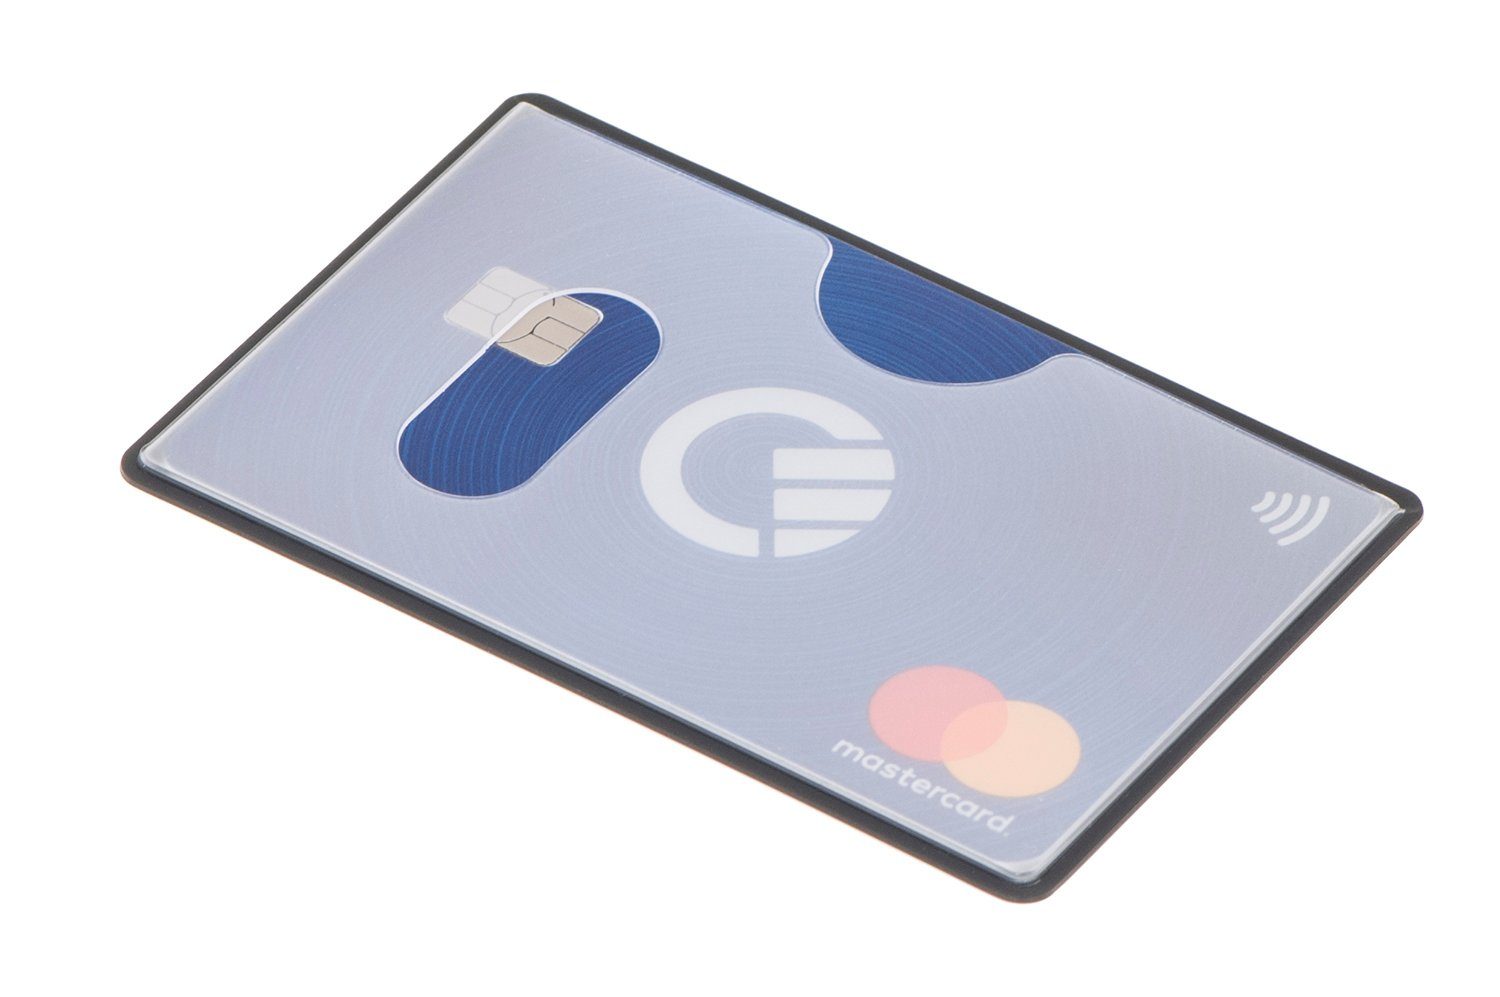 valonic Etui valonic - Kreditkartenhüllen RFID oben Einschub NFZ Schutz, mm, 91 59 Stück transparent, RFID-Block Scheckkarte x 6 Kreditkarte, abgeschirmt